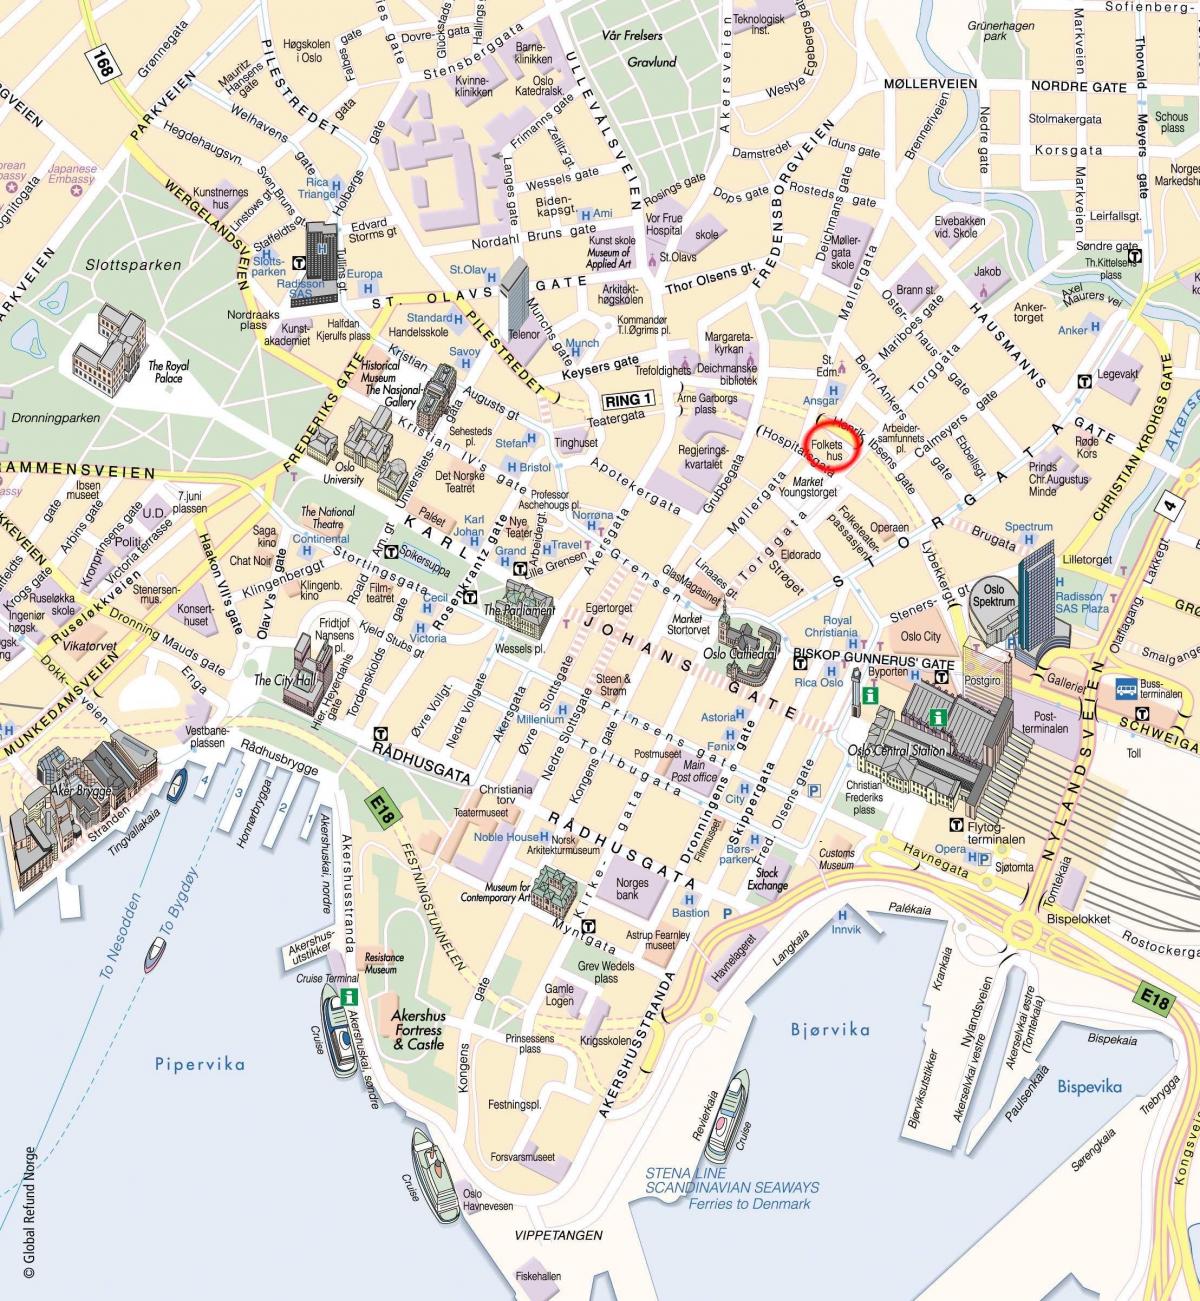 Mappa dei tour a piedi di Oslo